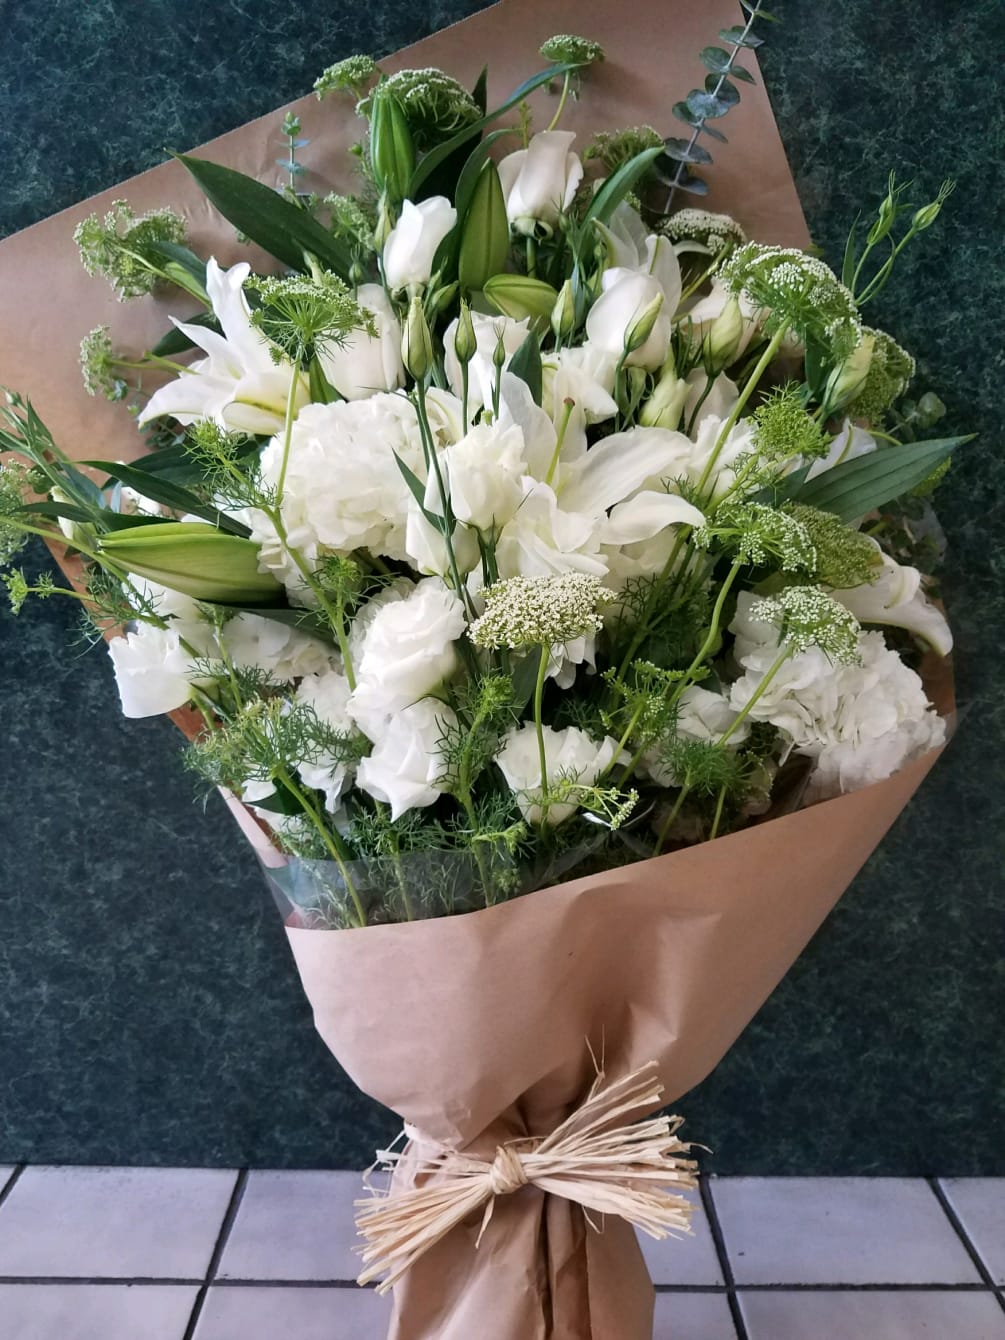 Wrapped Bouquet - Mixed Floral Premium Wrap